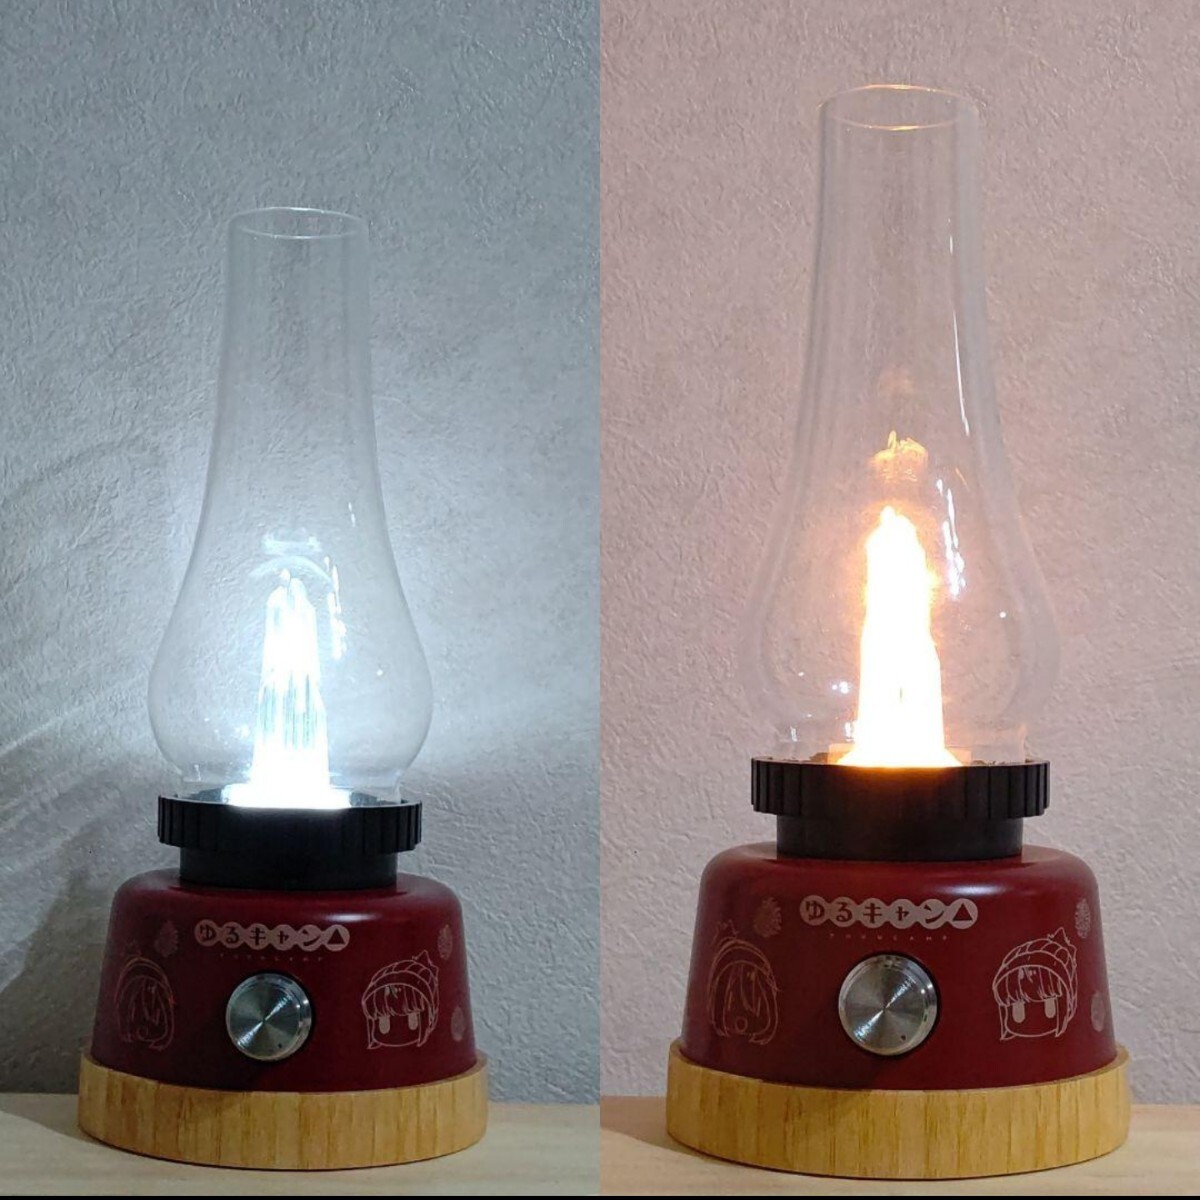 ゆるキャン ゆらめき LEDランタン アウトドア キャンプ 照明 ランプ インテリア 中古 送料無料 即決